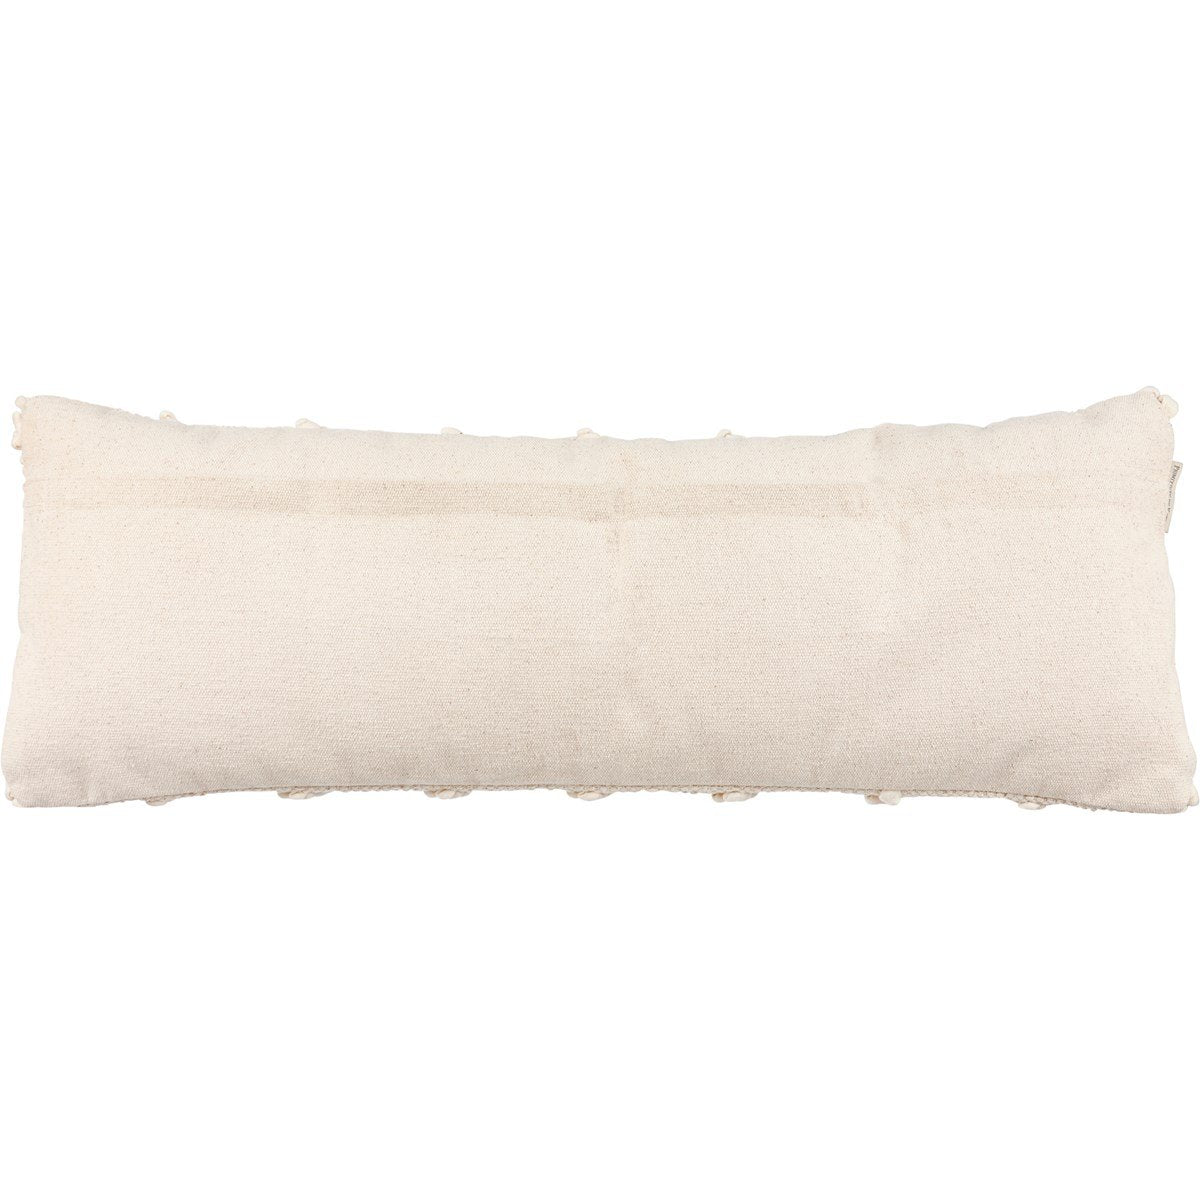 Knobby Bolster Pillow